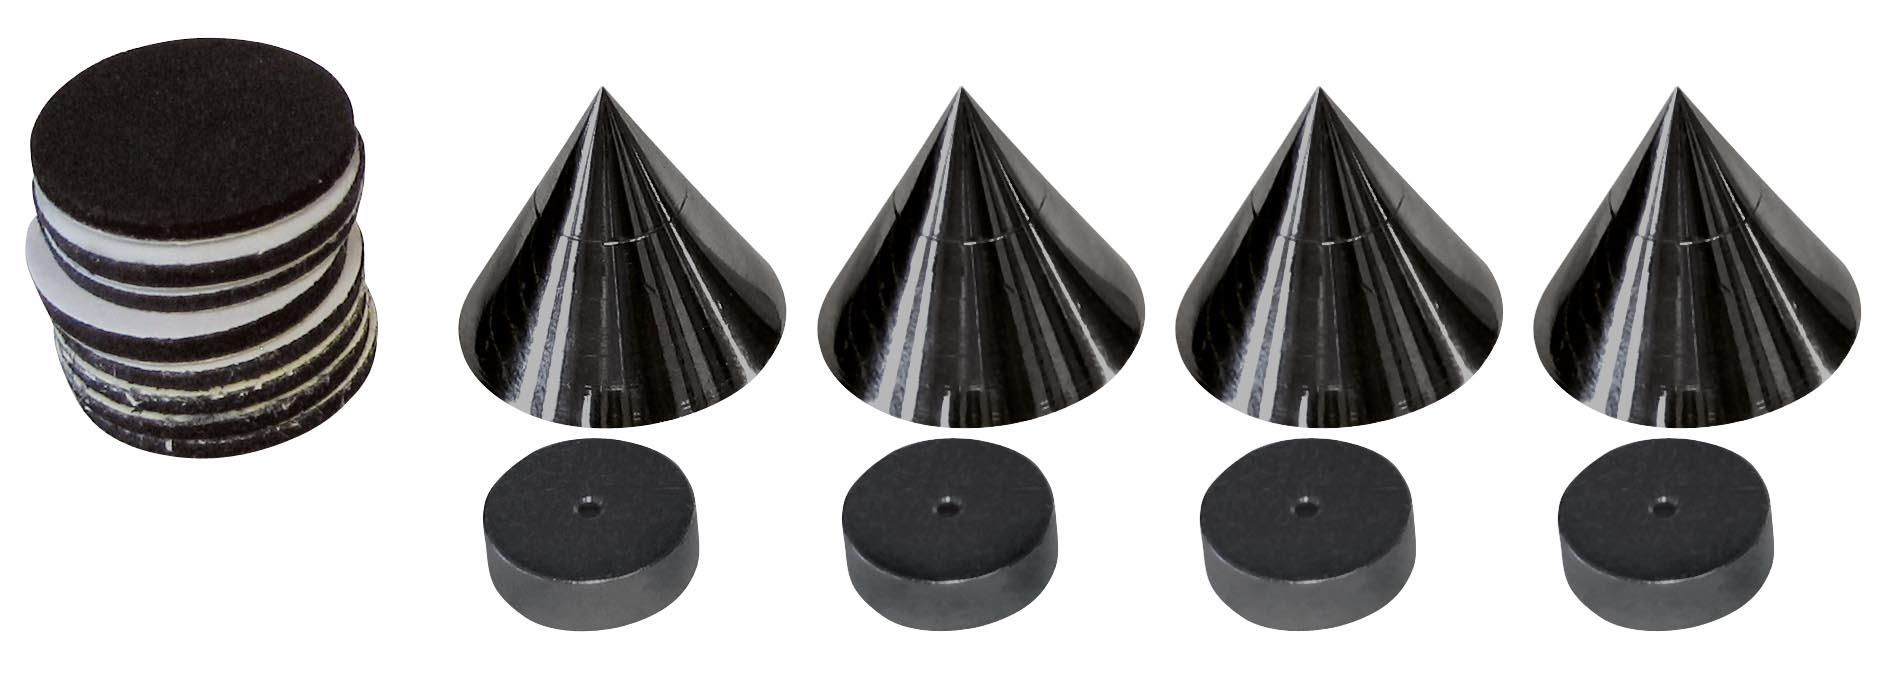 Die schwarzen Dynavox Lautsprecher Spikes nehmen kleine bis mittelgroße Lautsprecher auf.